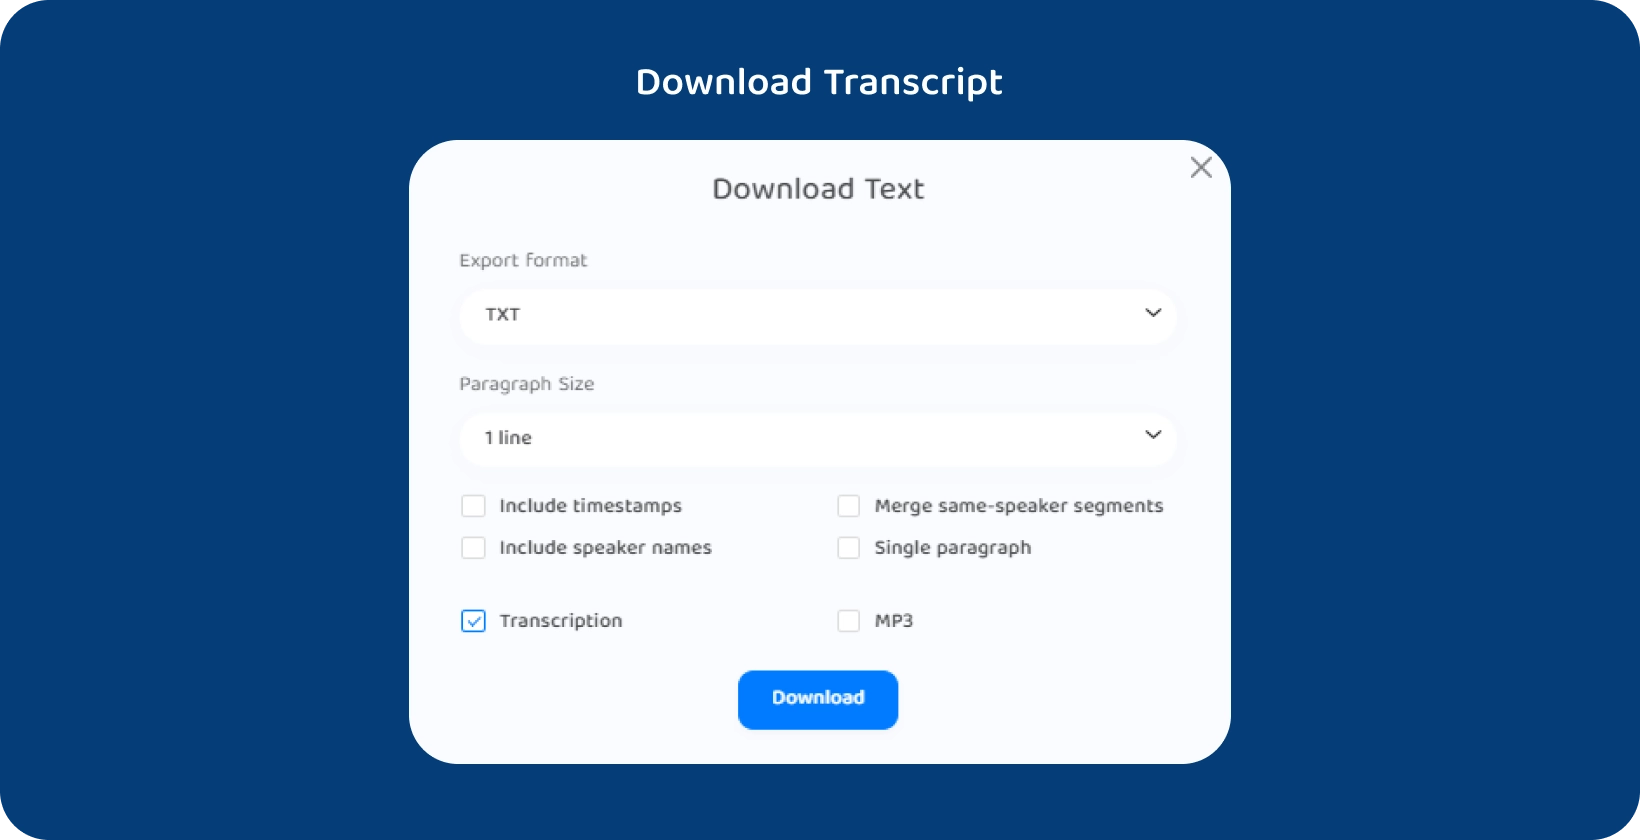 Interfejs Transkryptora pokazujący opcje pobierania tekstu transkrybowanego wykładu.